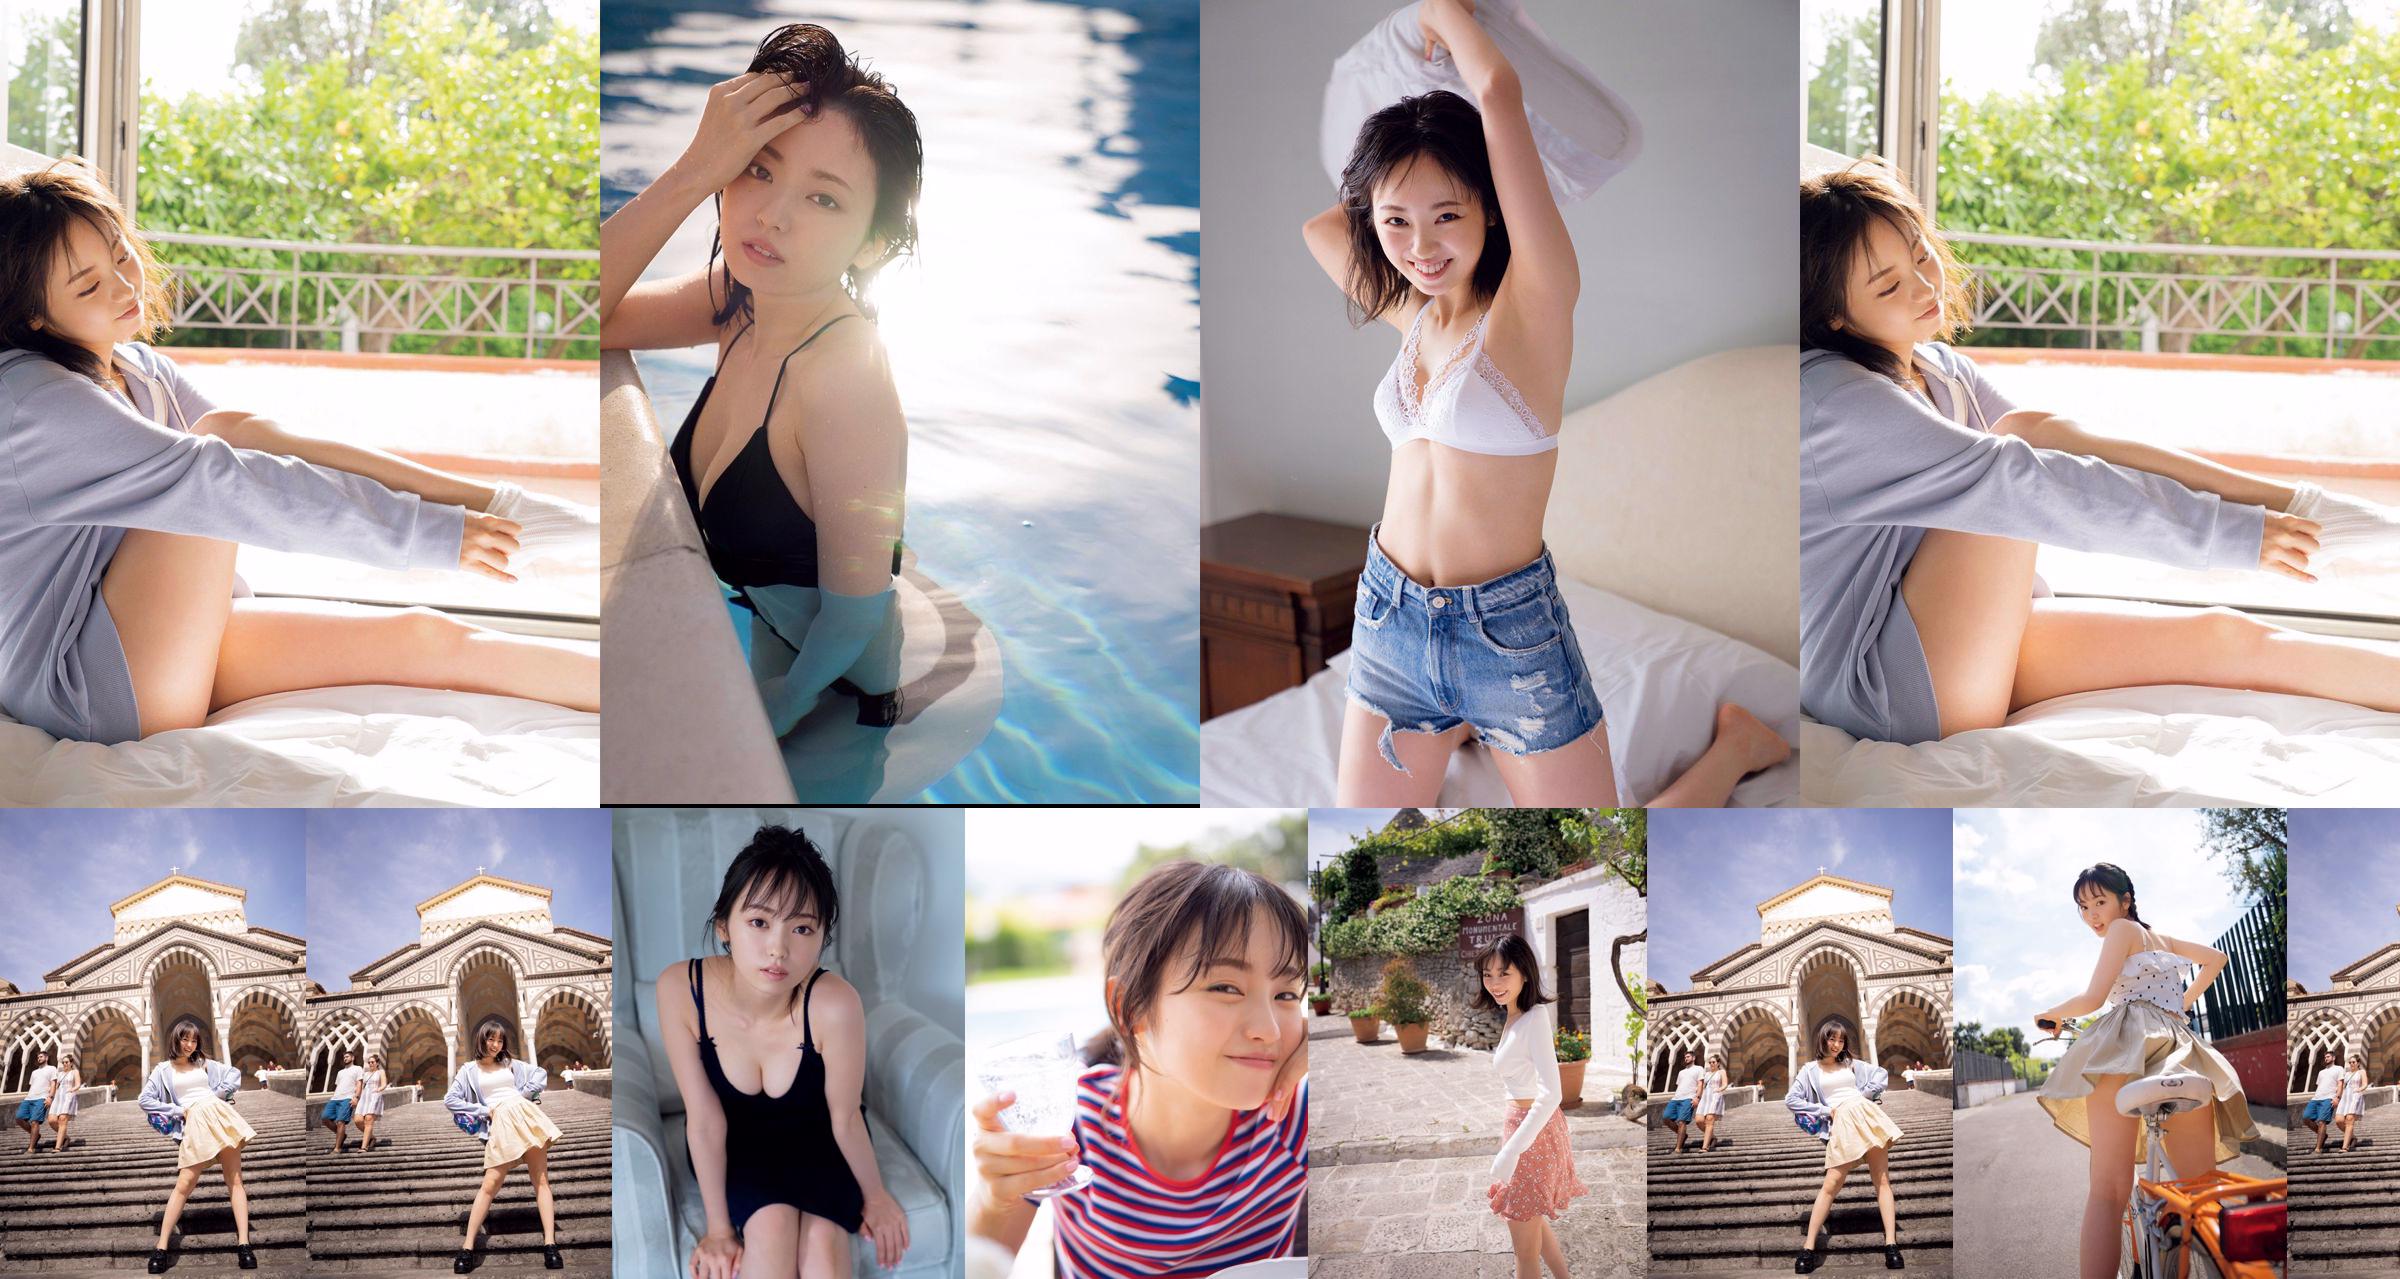 [VIERNES] Keyakizaka46, Yui Imaizumi "Traje de baño y lencería de" ¡Primero y último! "" Foto No.99d26b Página 1